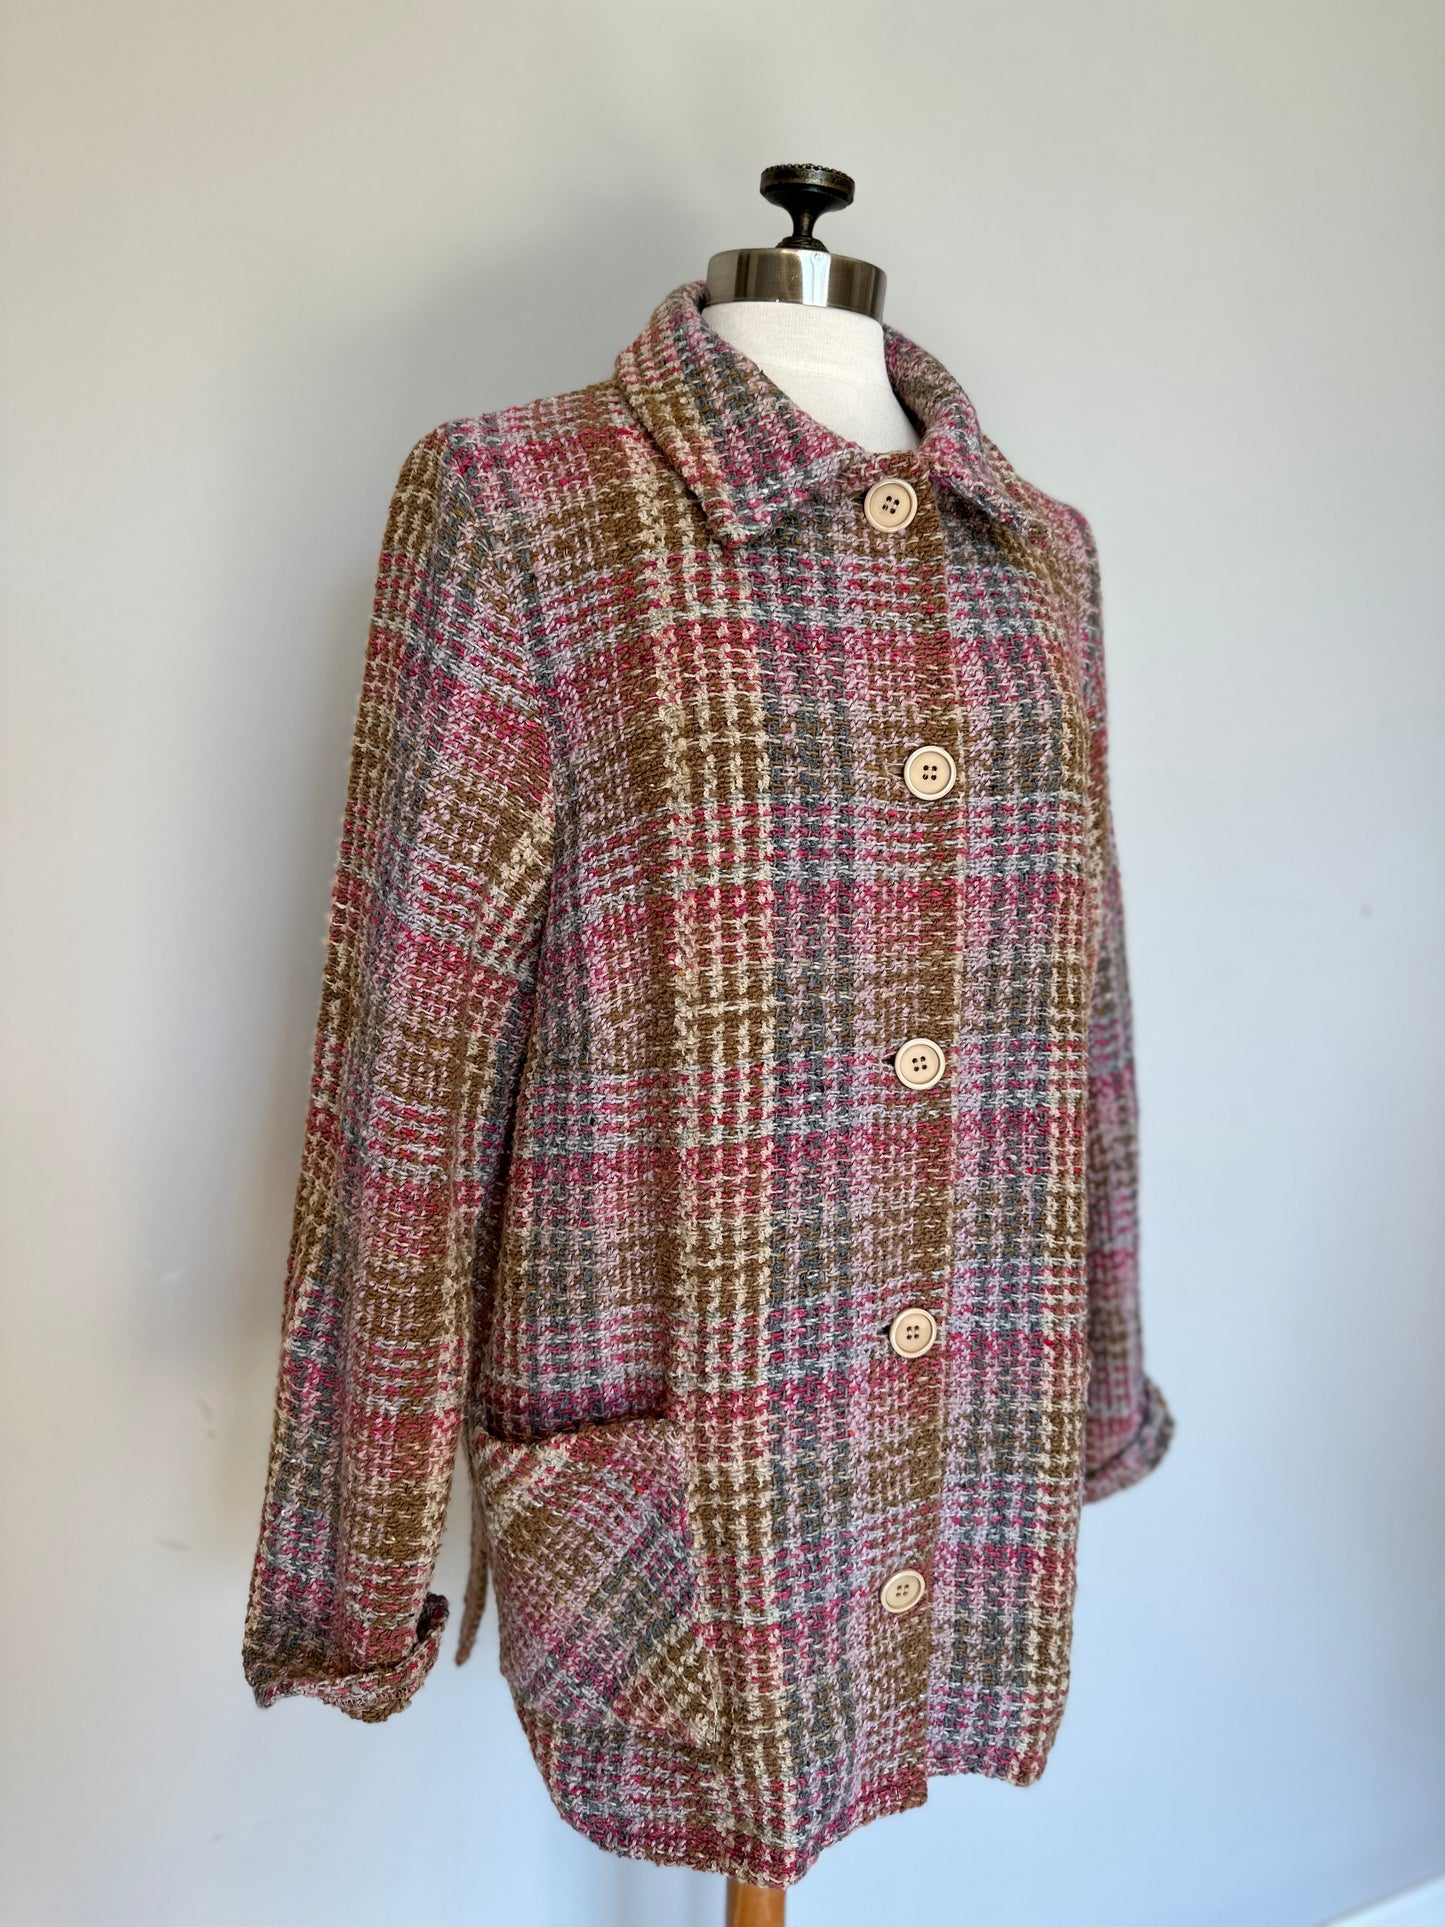 Vintage Boyne Valley Weavers Wool Shacket